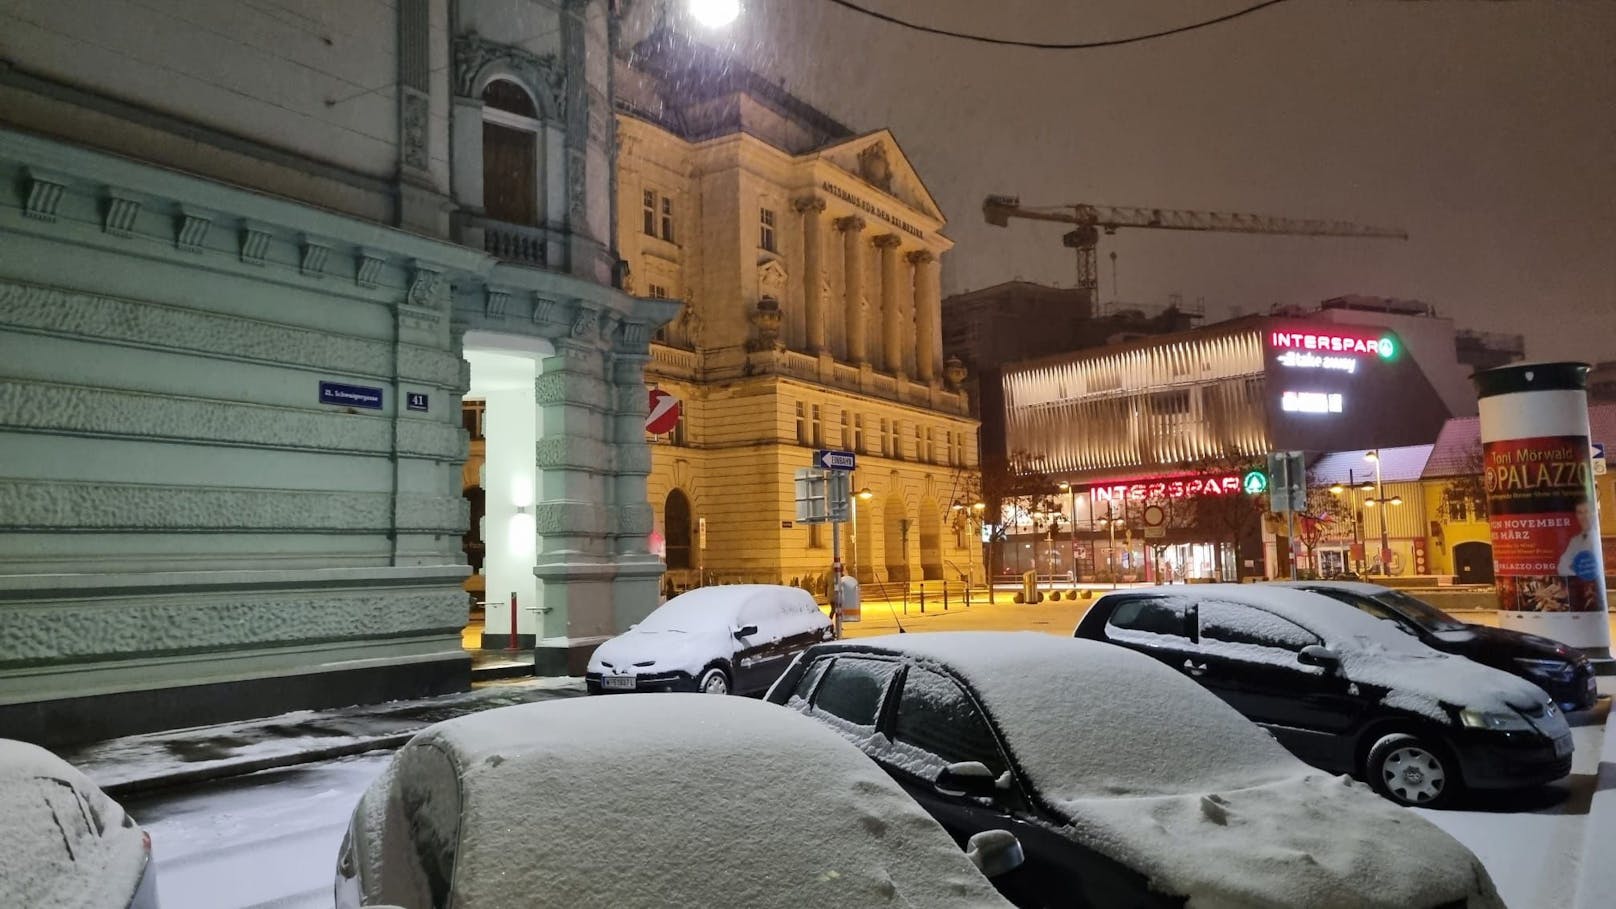 Wintereinbruch am Samstag in Wien! Eine Schnee-Walze ist über die Bundesstadt gerollt und hat sie weiß gefärbt. In mehreren Bezirken liegt Schnee.